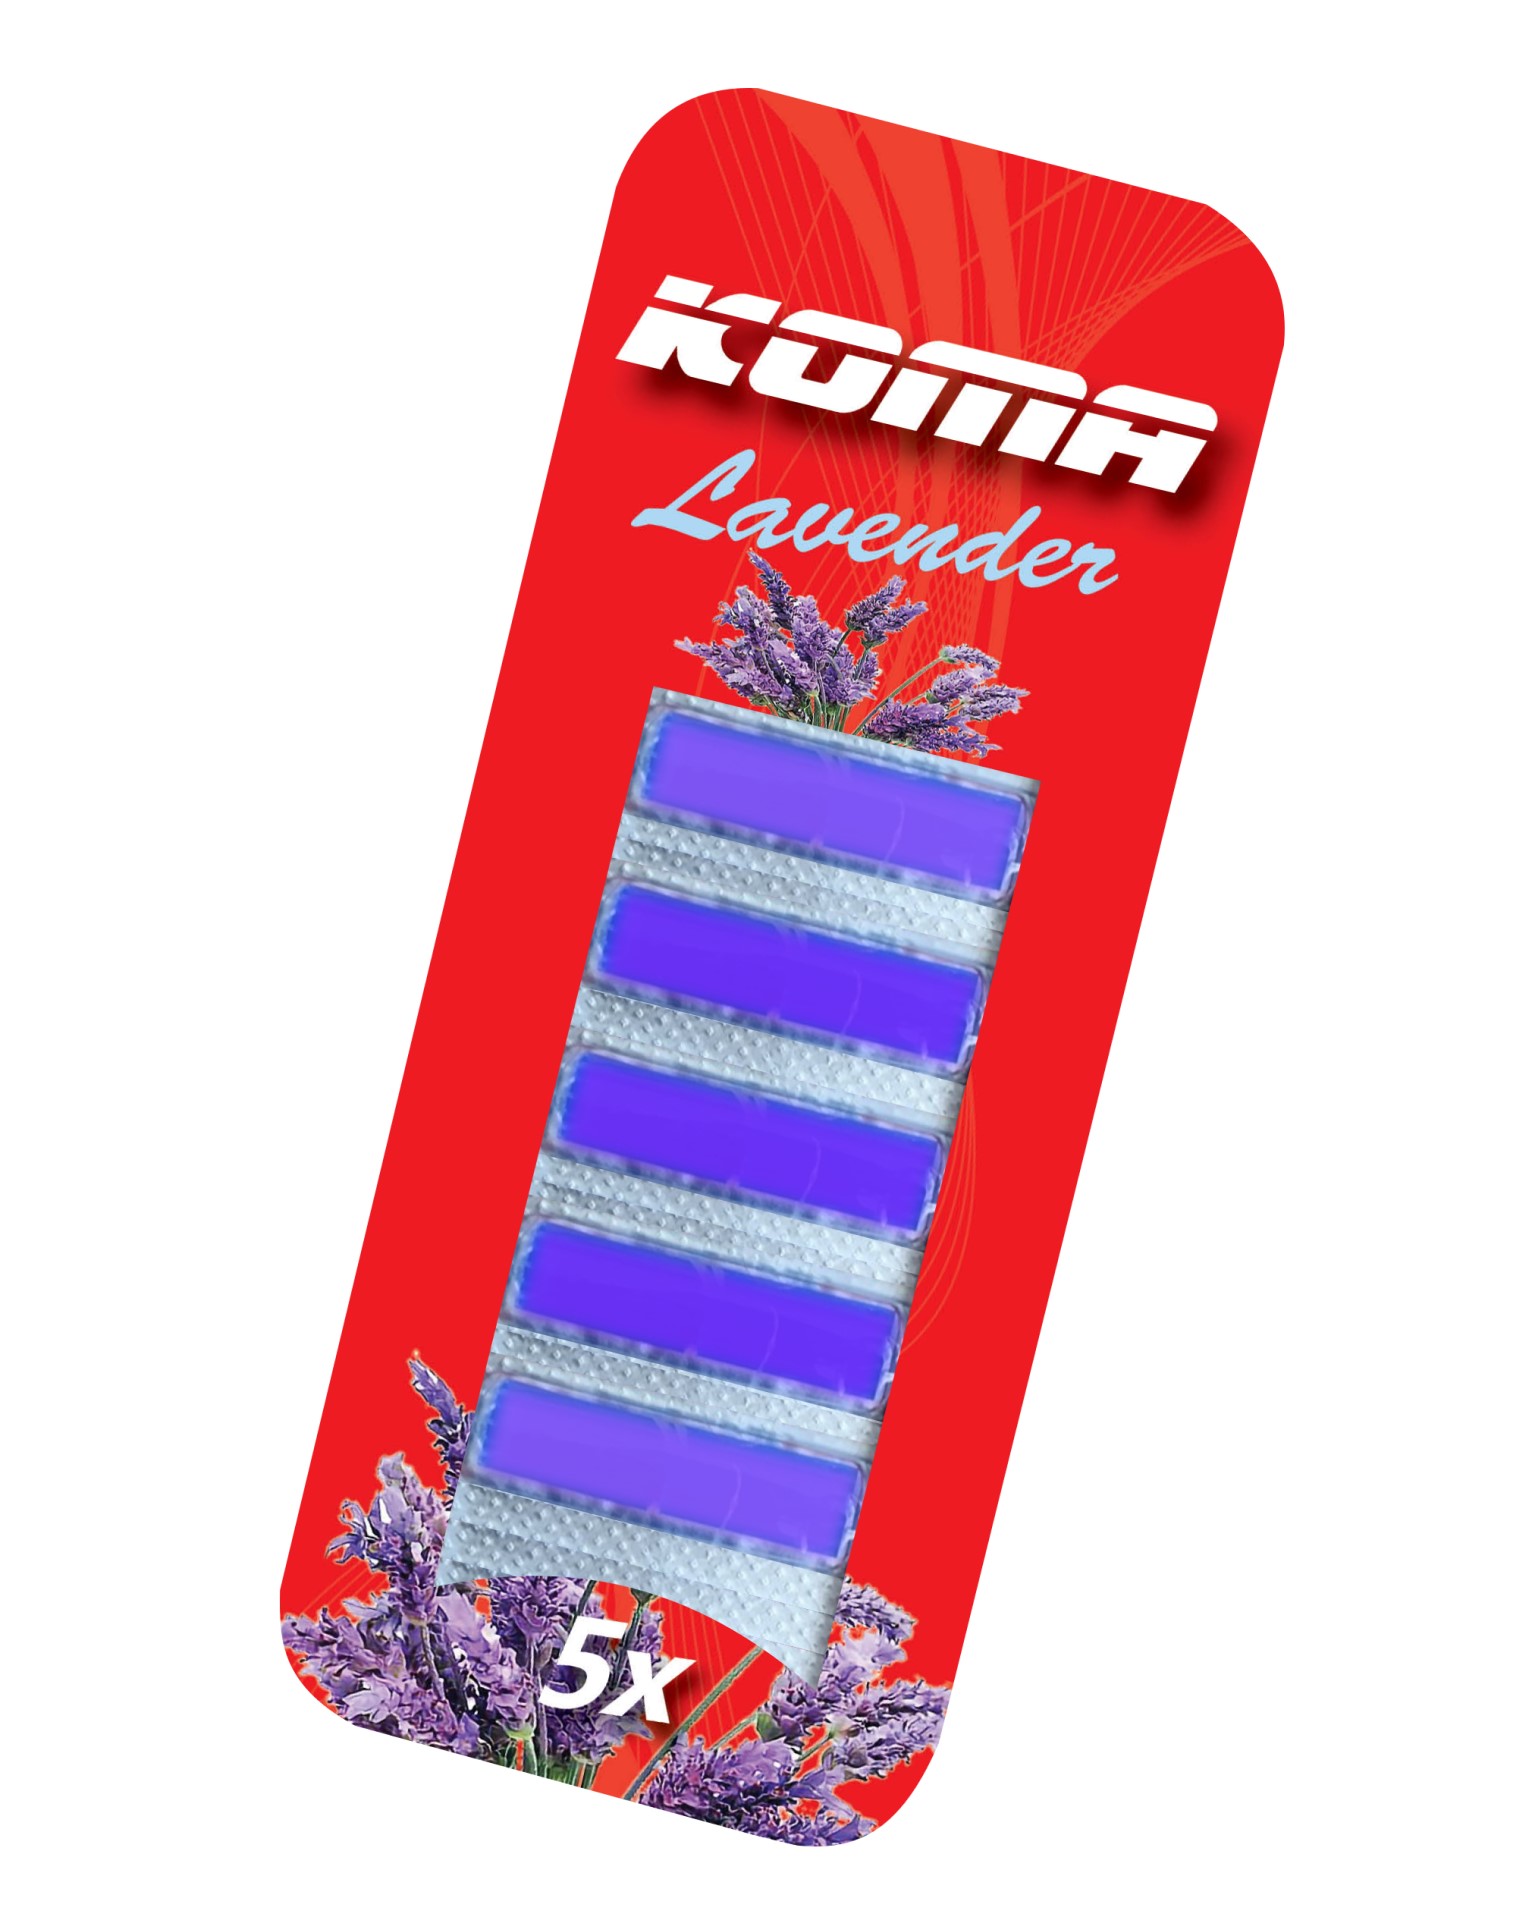 KOMA OSV7 - Porszívóhoz illat Levendula (levendula illat), 5db csomagban